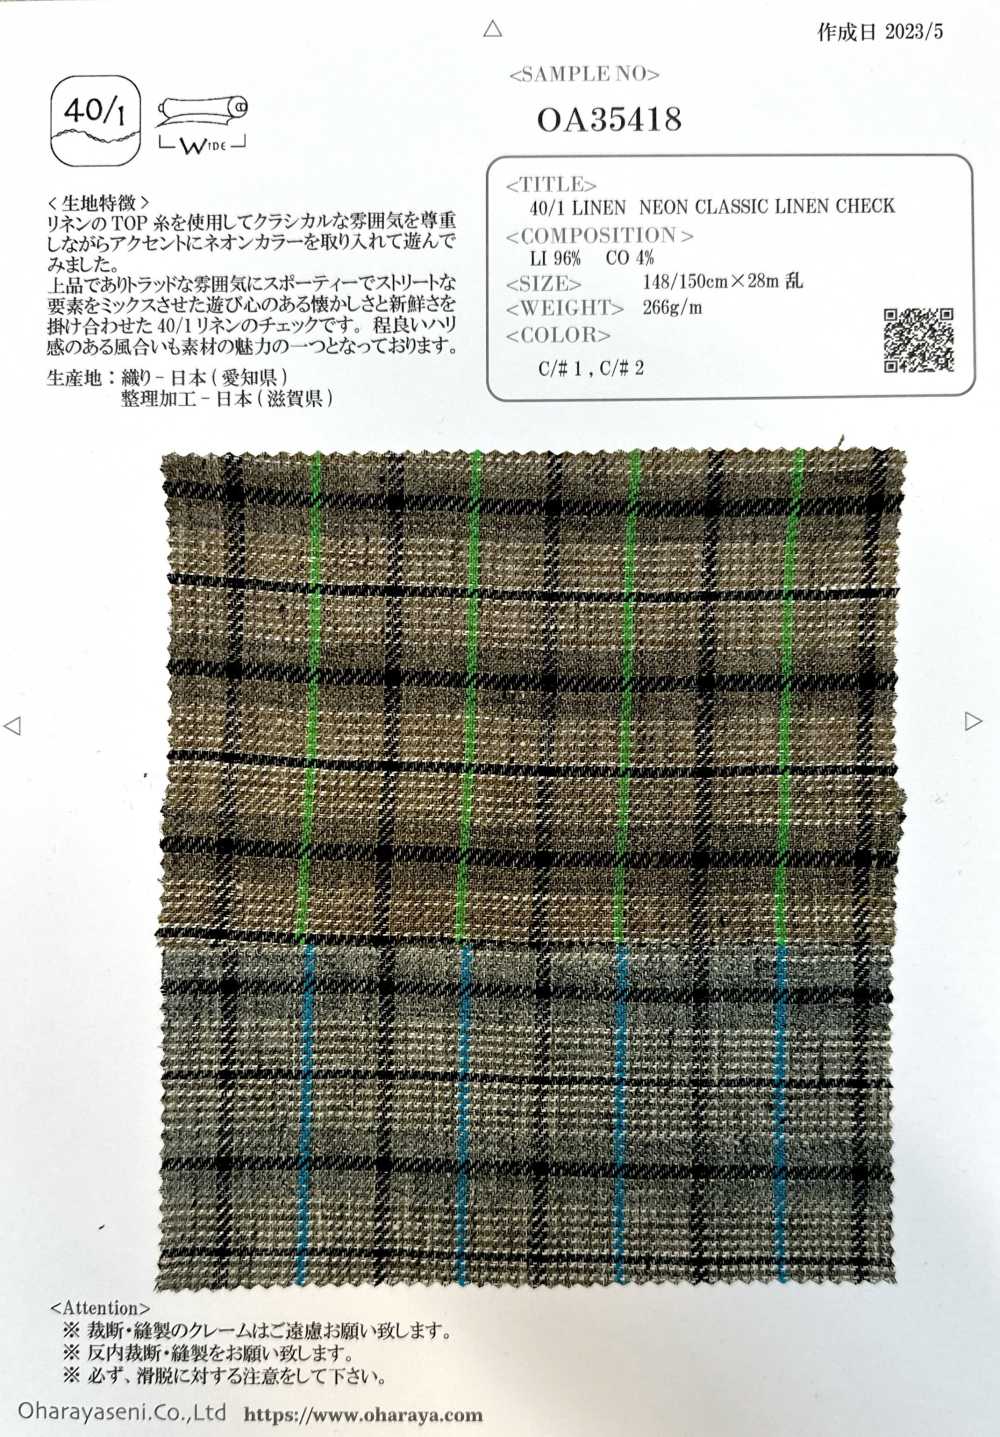 OA35418 40/1 LINEN NEON CLASSIC LINEN CHECK[Textile / Fabric] Oharayaseni